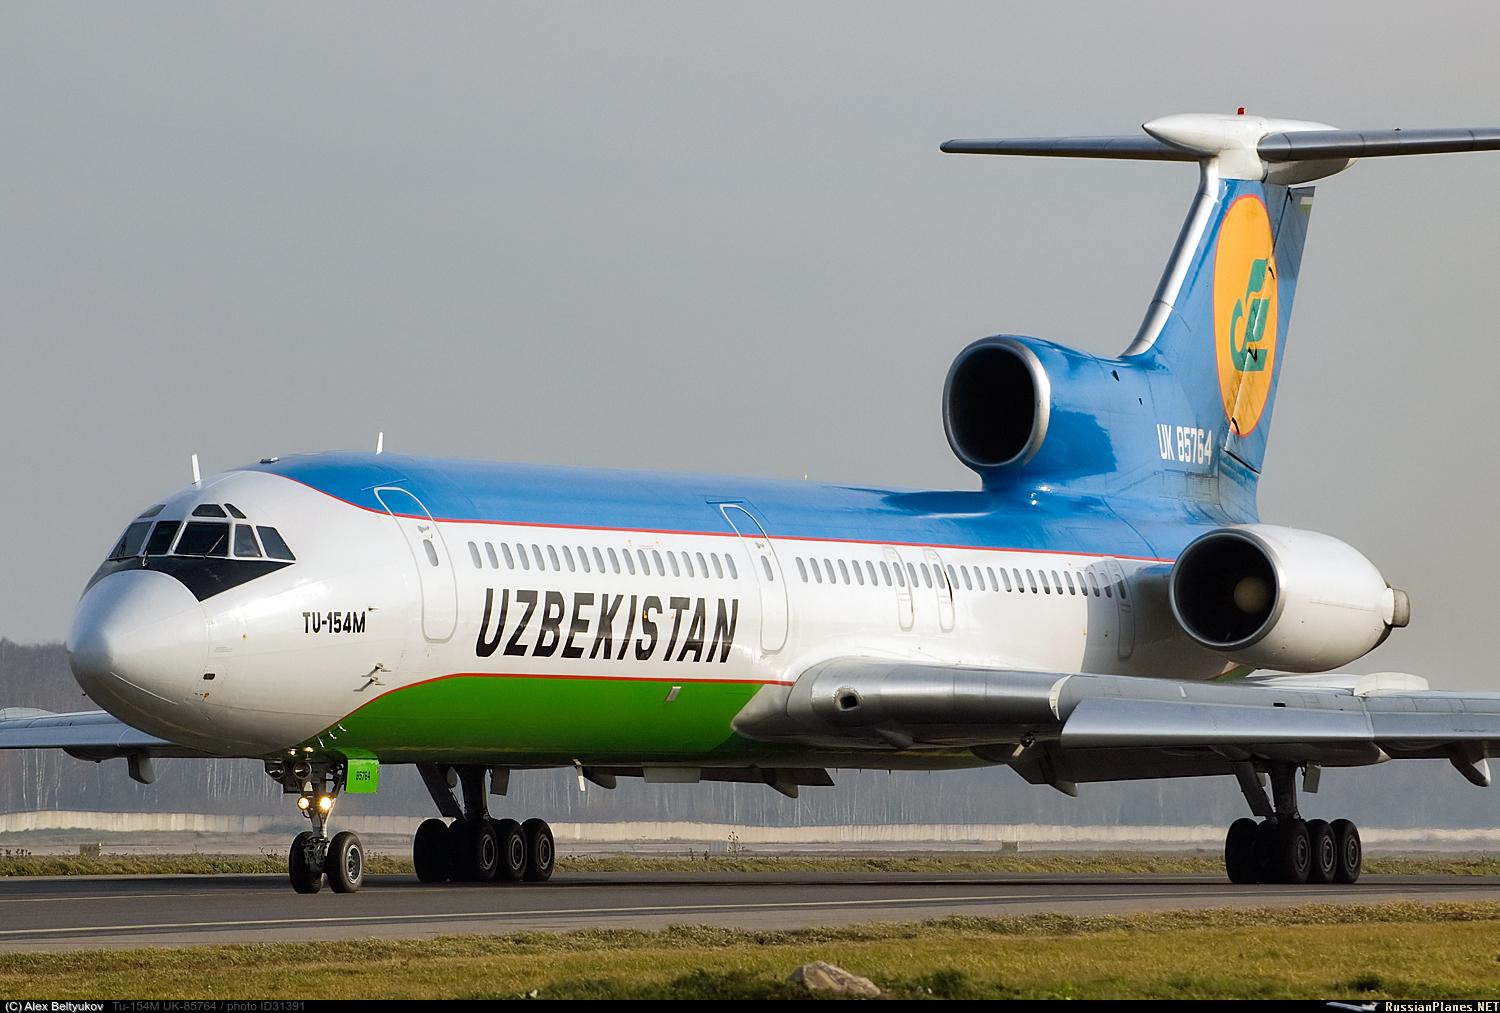 Қўқон ва Мўйноқ аэропортлари парвозларни қабул қилишга тайёр — Uzbekistan Airports